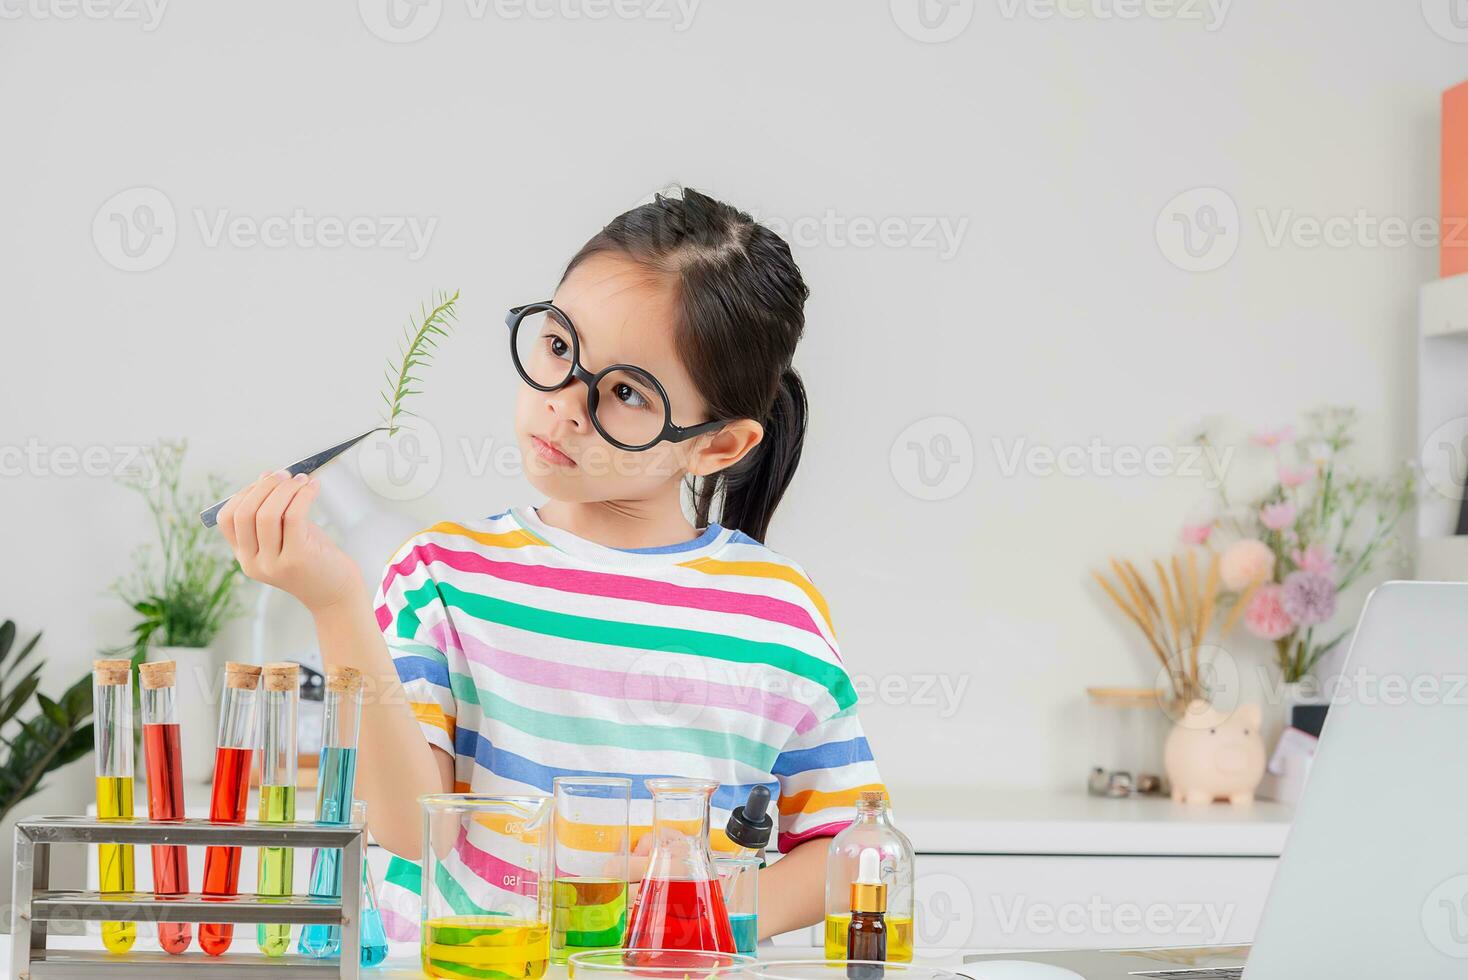 asiatisk liten flicka arbetssätt med testa rör vetenskap experimentera i vit klassrum foto